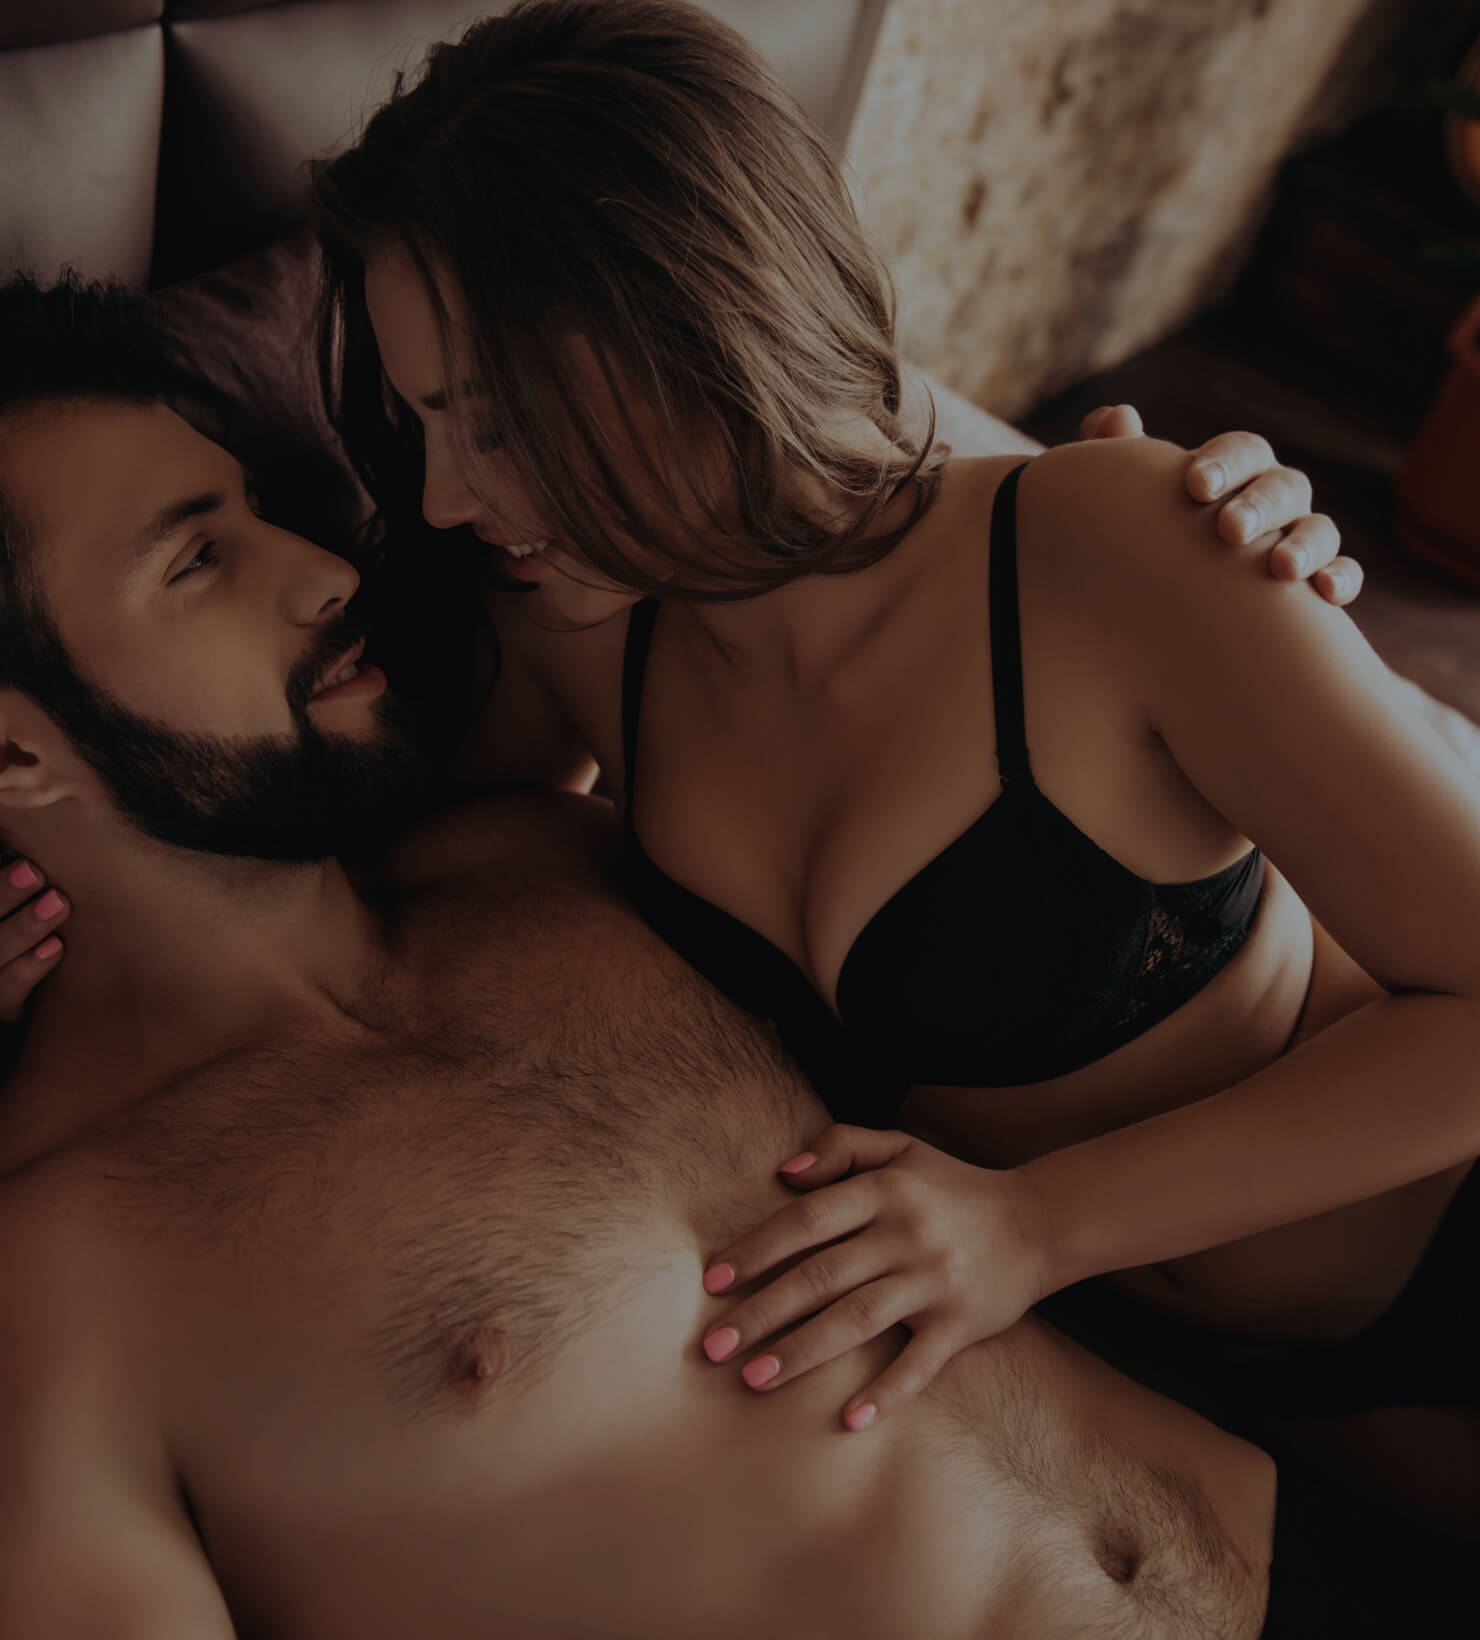 Men orgasm enhancement treatment with PRP